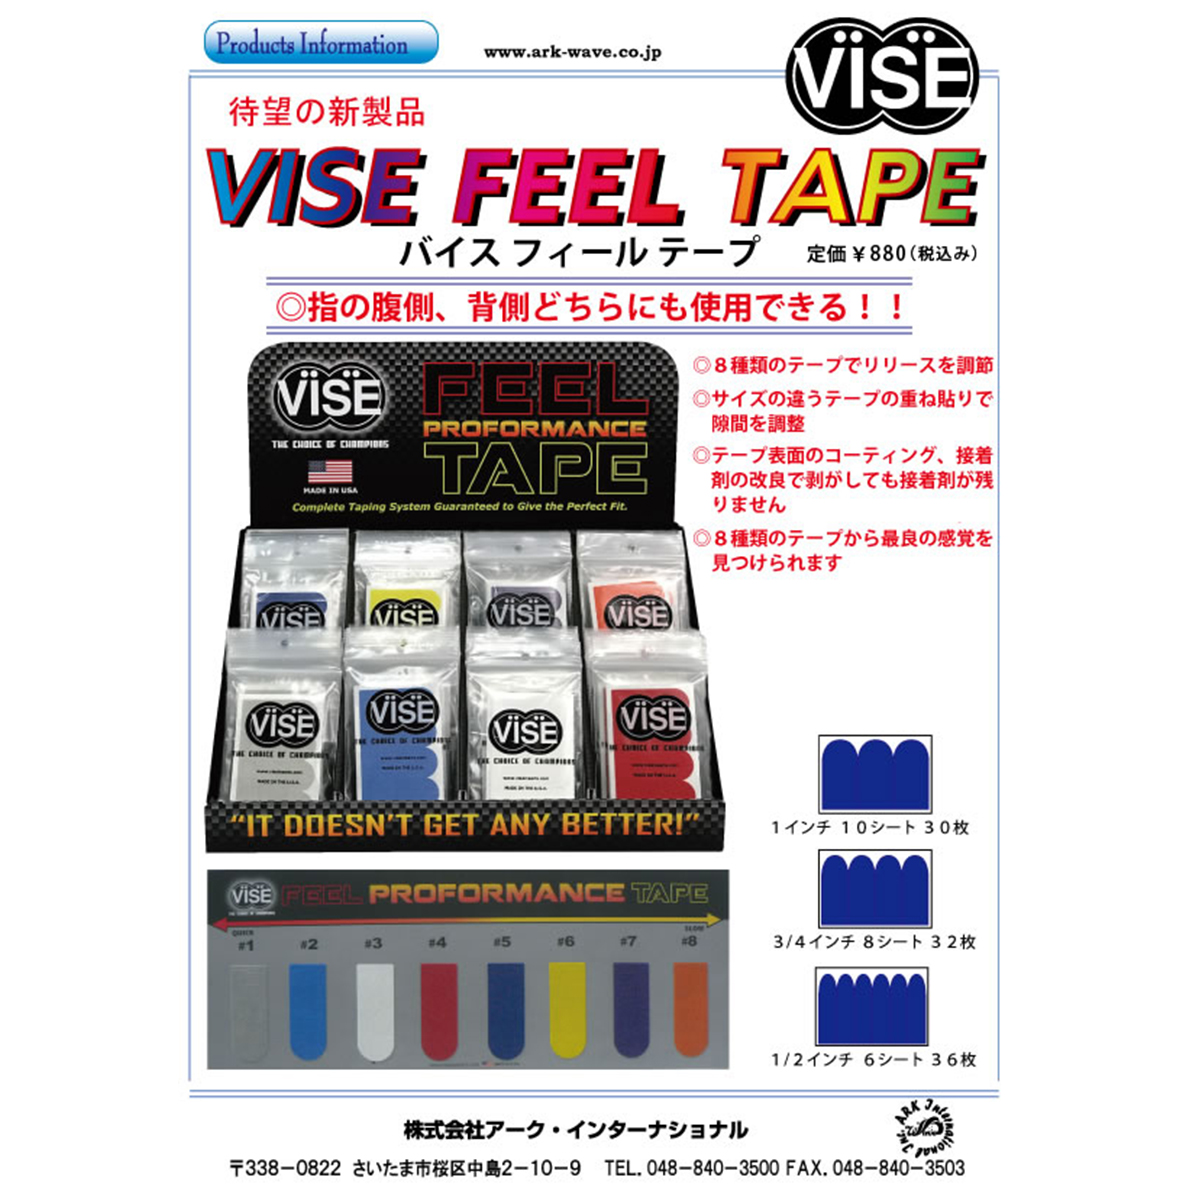 VISE フィールテープ#8(橙色)